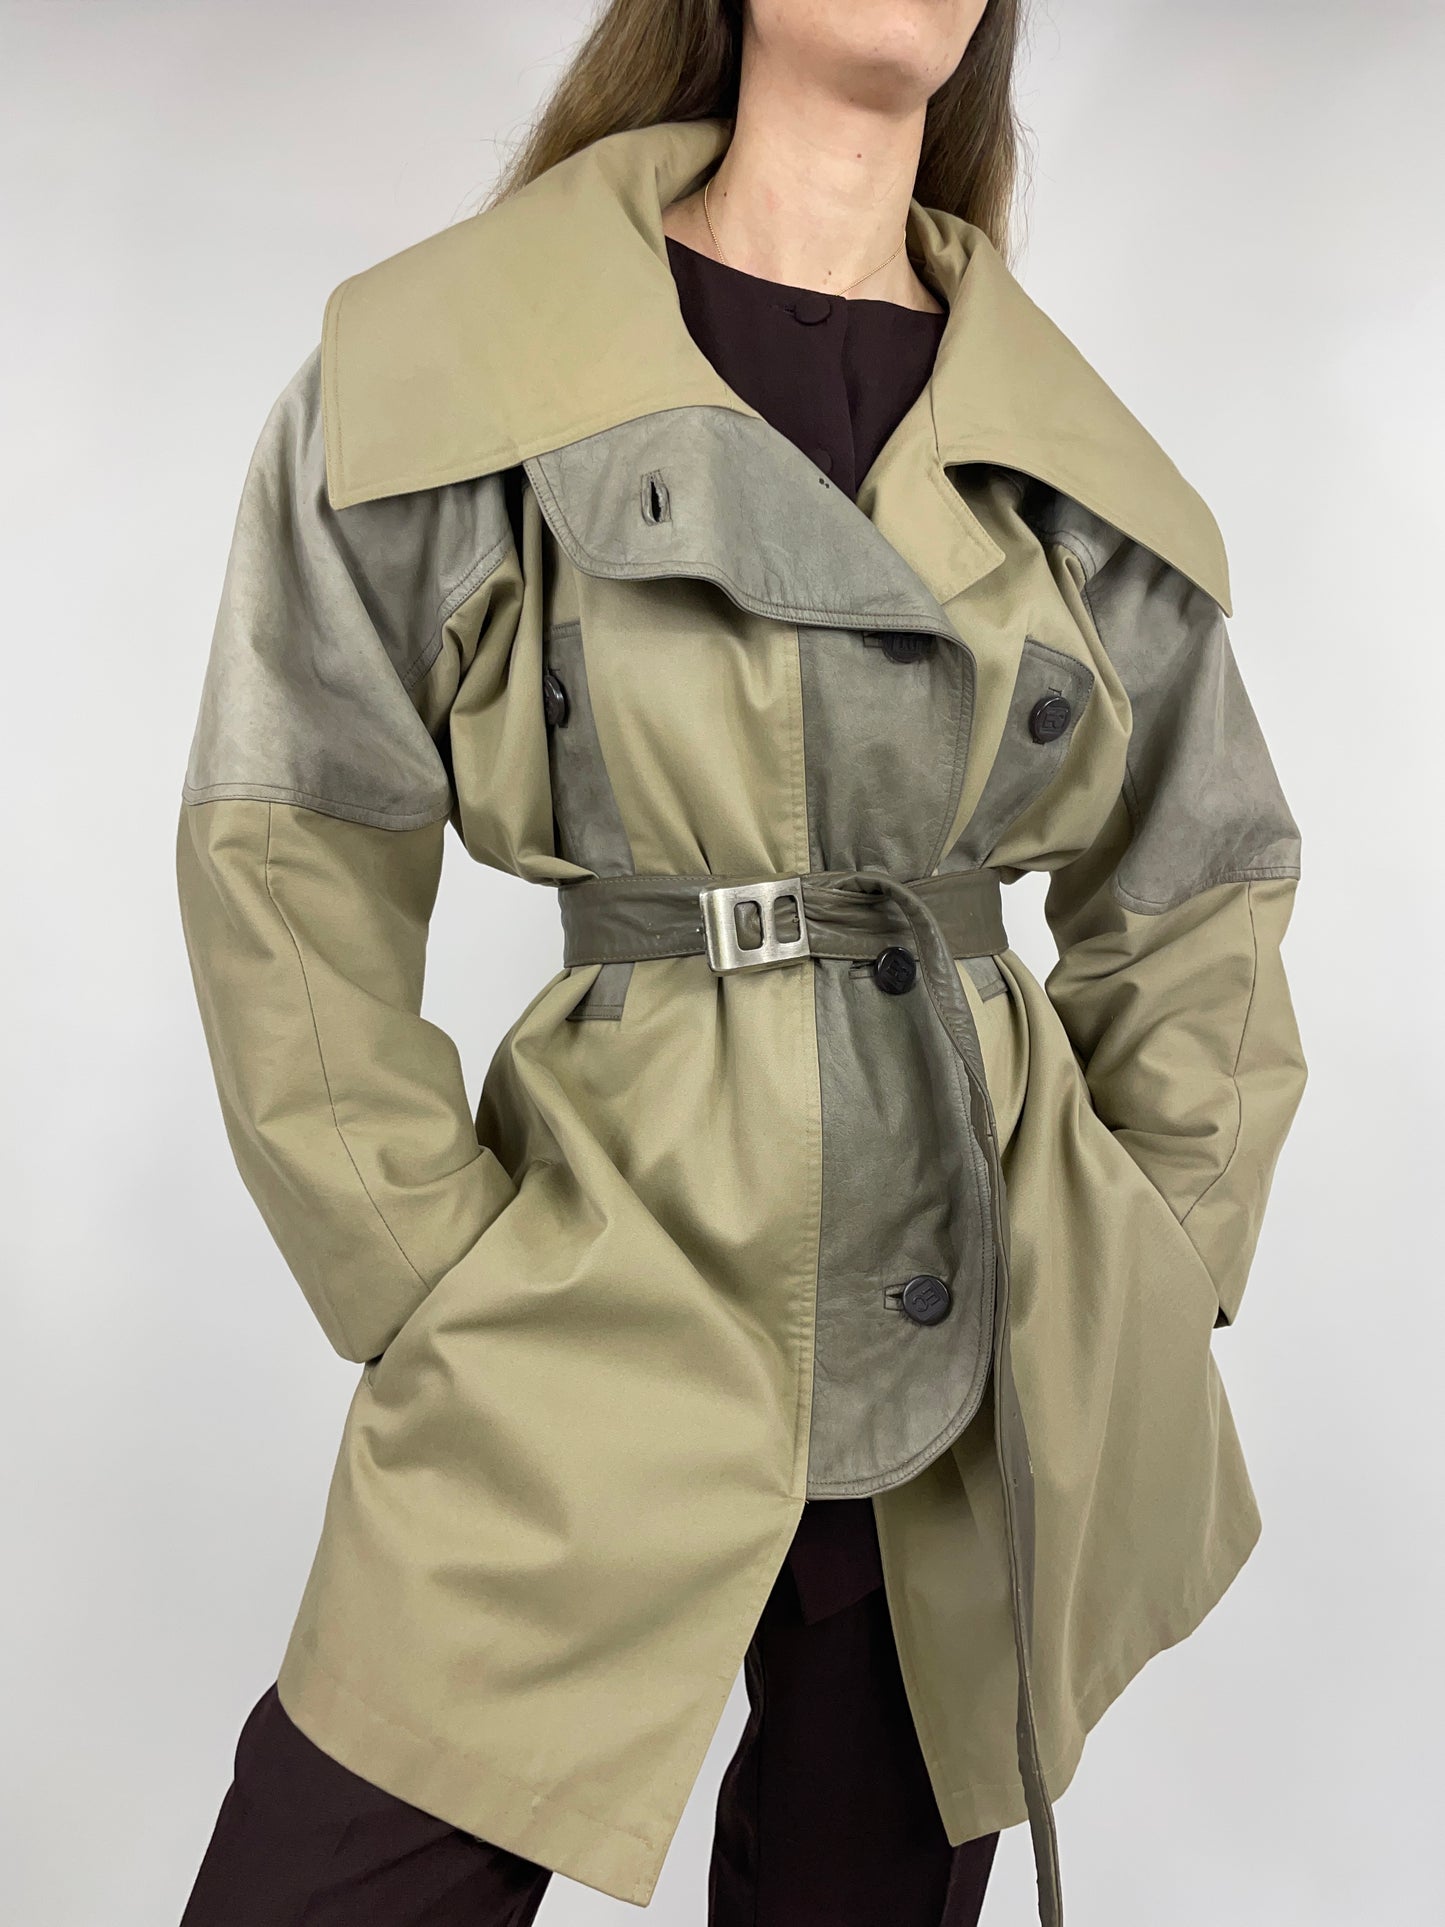 1980s coat